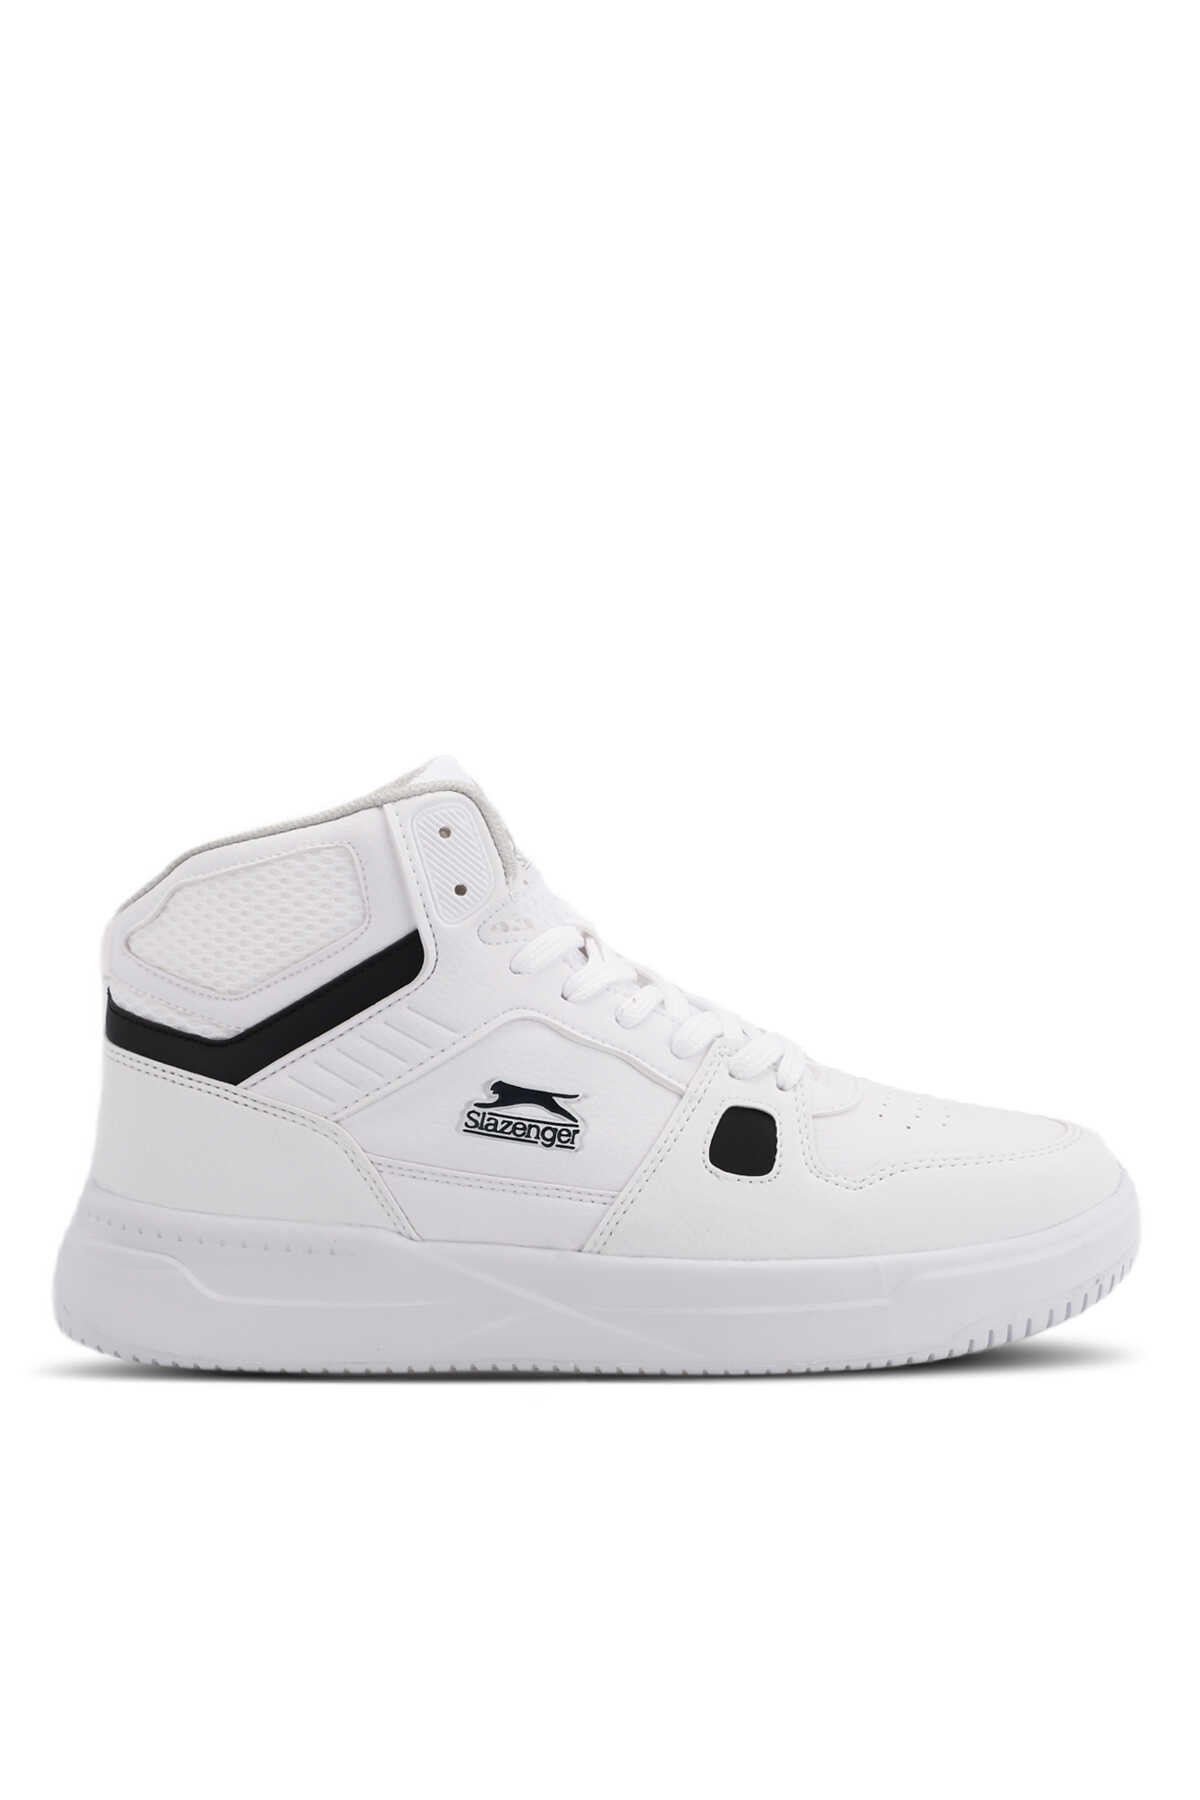 Slazenger - PAN Sneaker Erkek Ayakkabı Beyaz / Taba